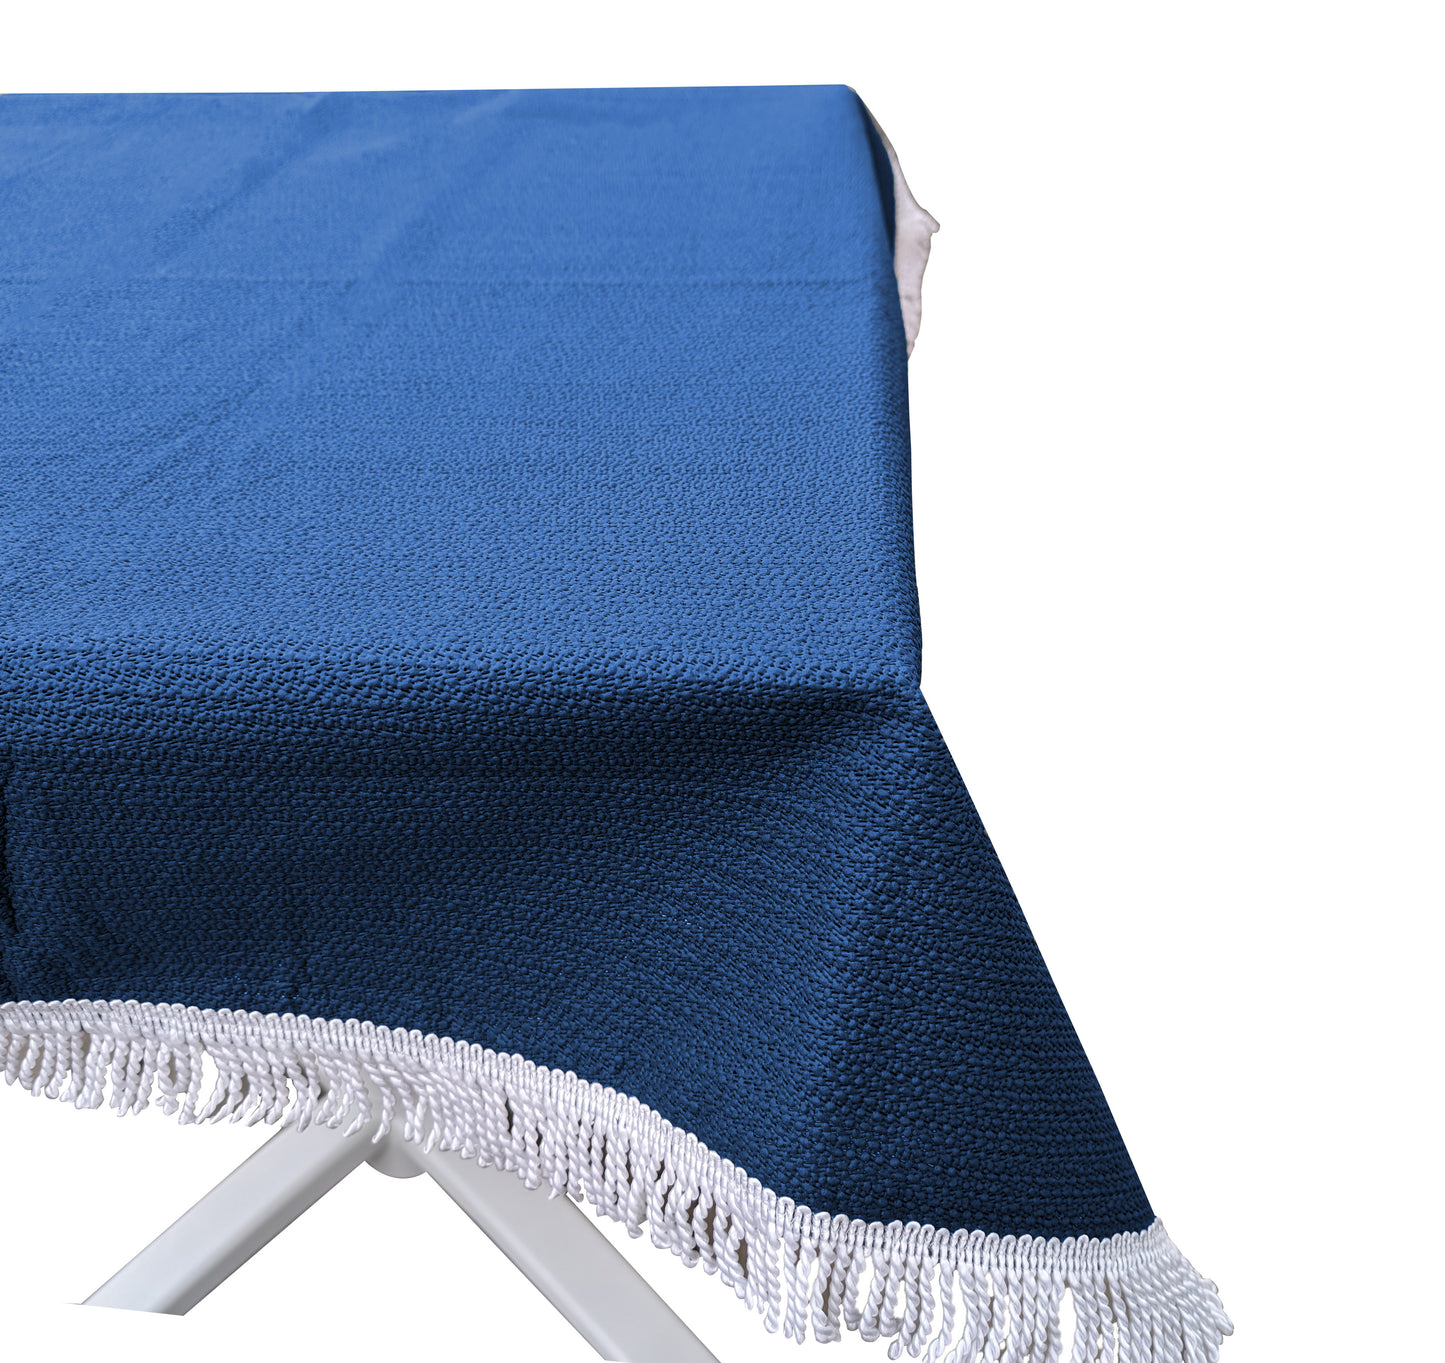 Gartentischdecke 160x260cm eckig  Blau Weichschaum Witterungsbeständig  Wetterfest geschäumt  Pflegeleicht  abwaschbar